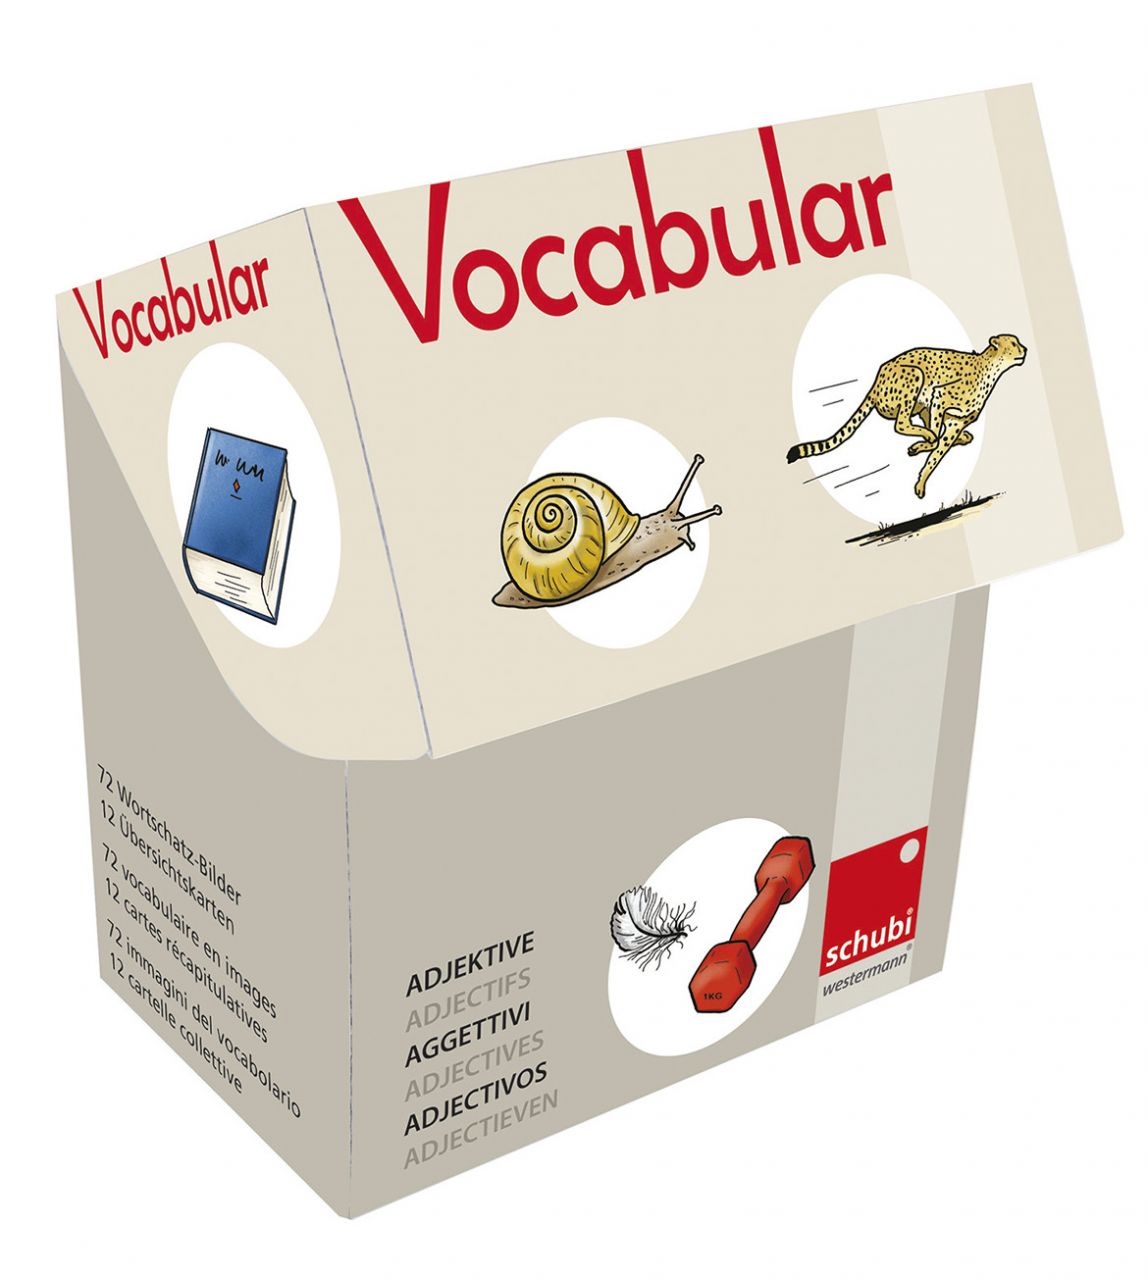 Vocabular Wortschatz-Bildbox ADJEKTIVE